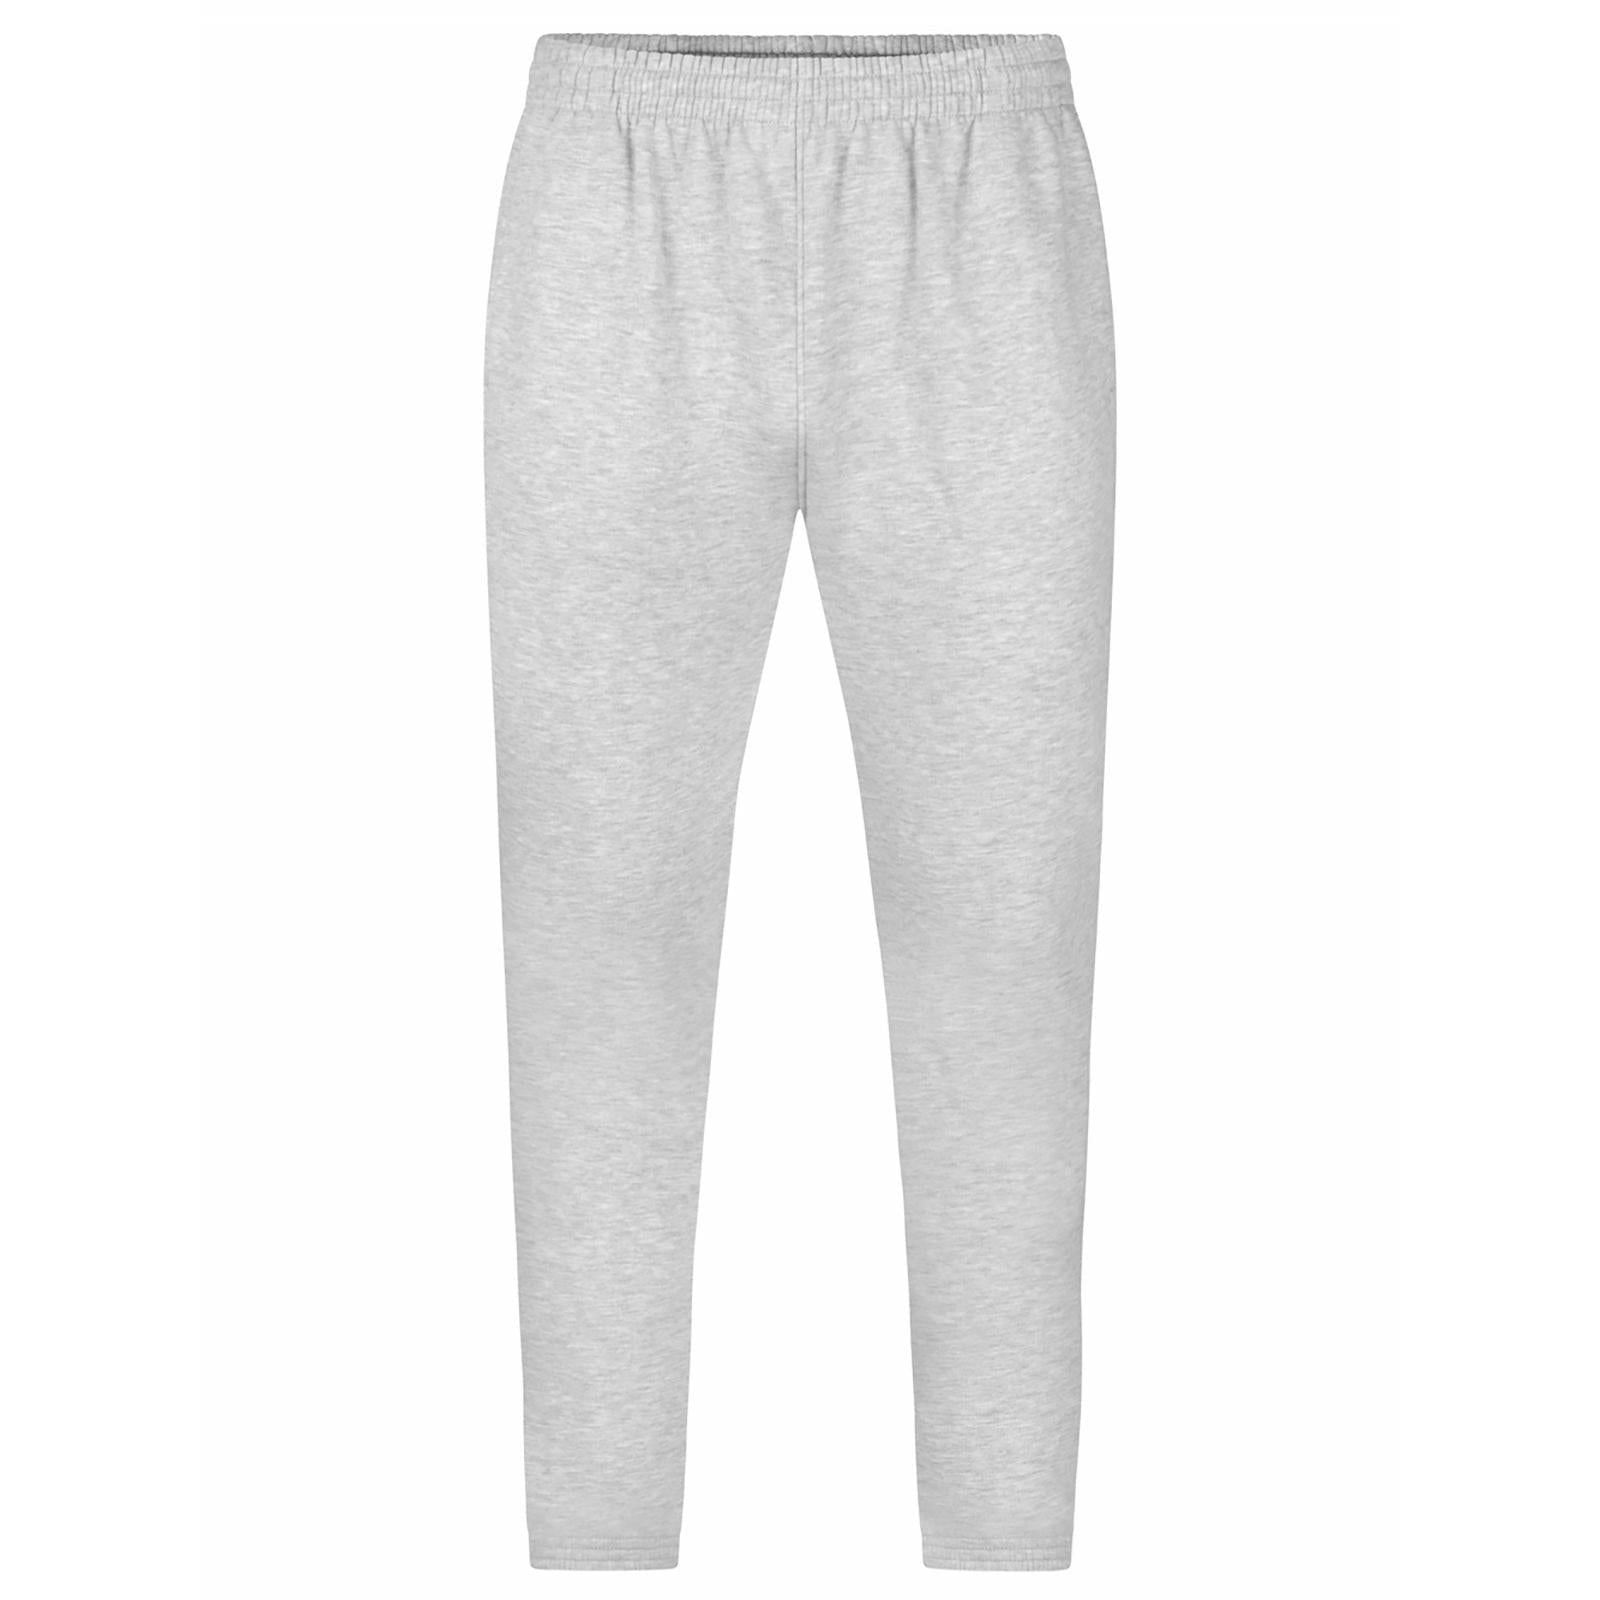 UX Jogging pants grey